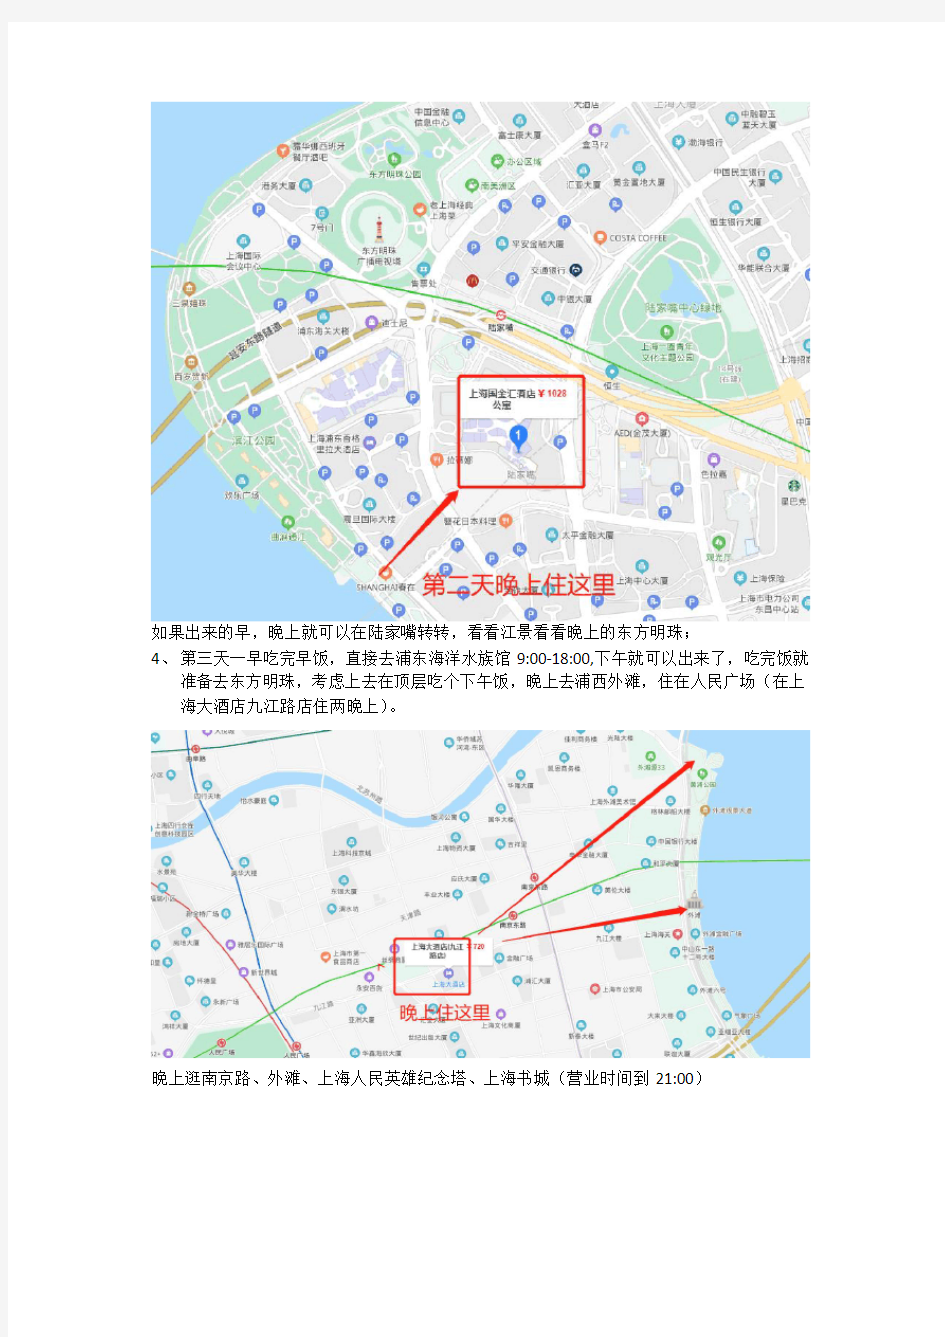 玩转上海三天攻略(迪士尼、外滩、上海博物馆)